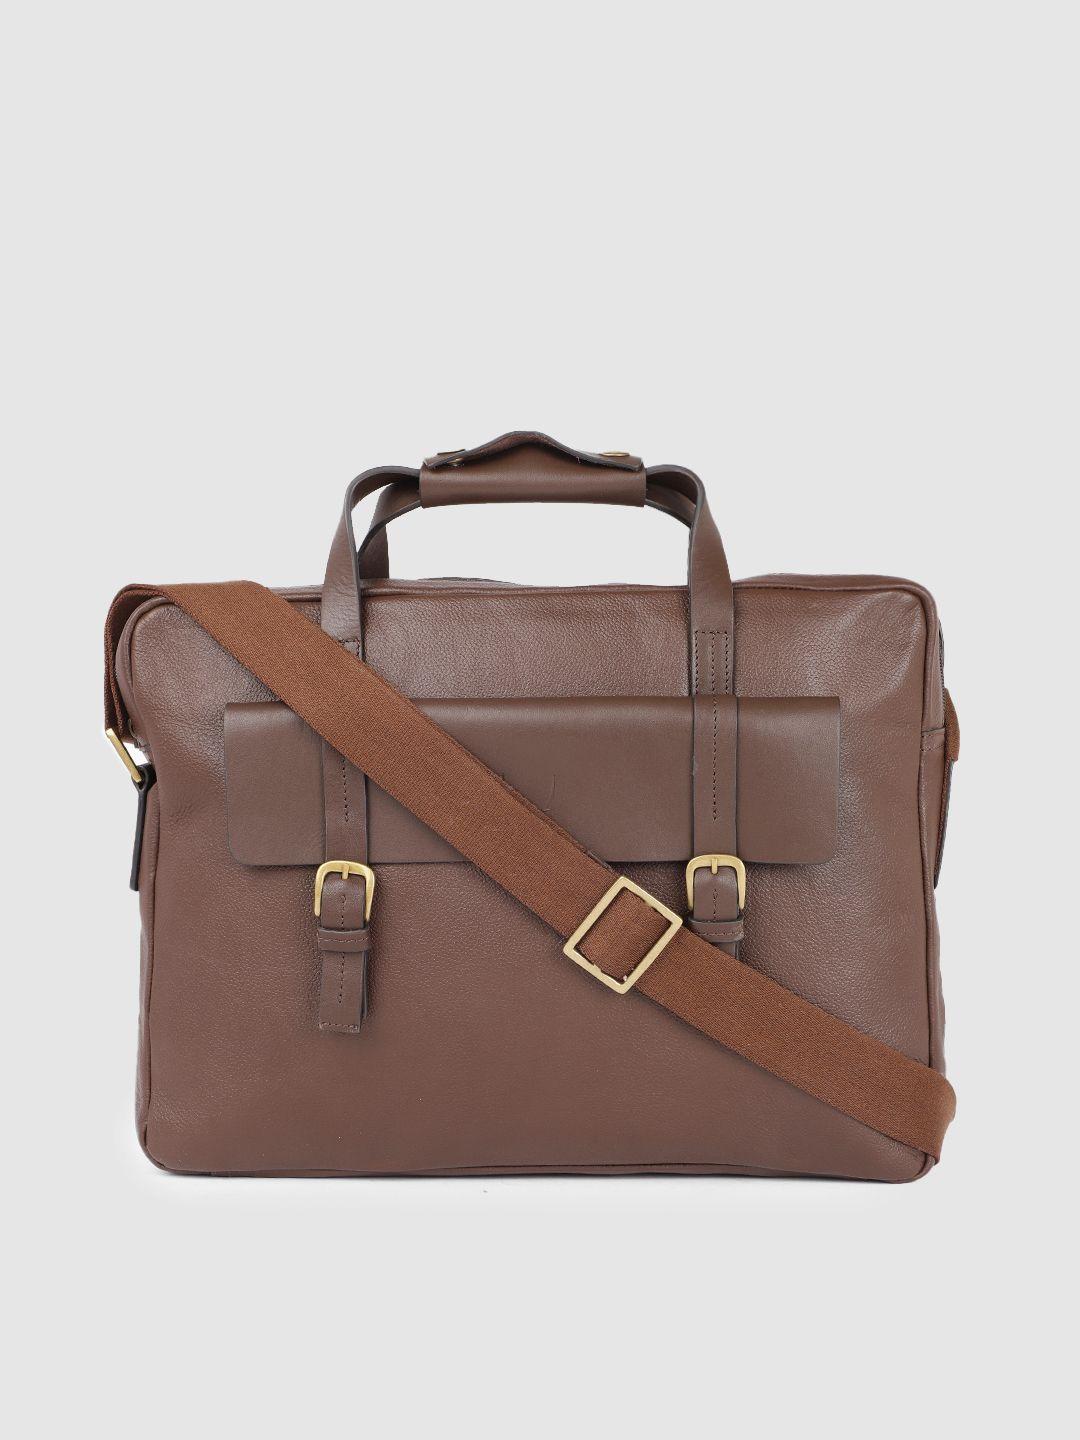 hidesign men brown solid leather laptop bag